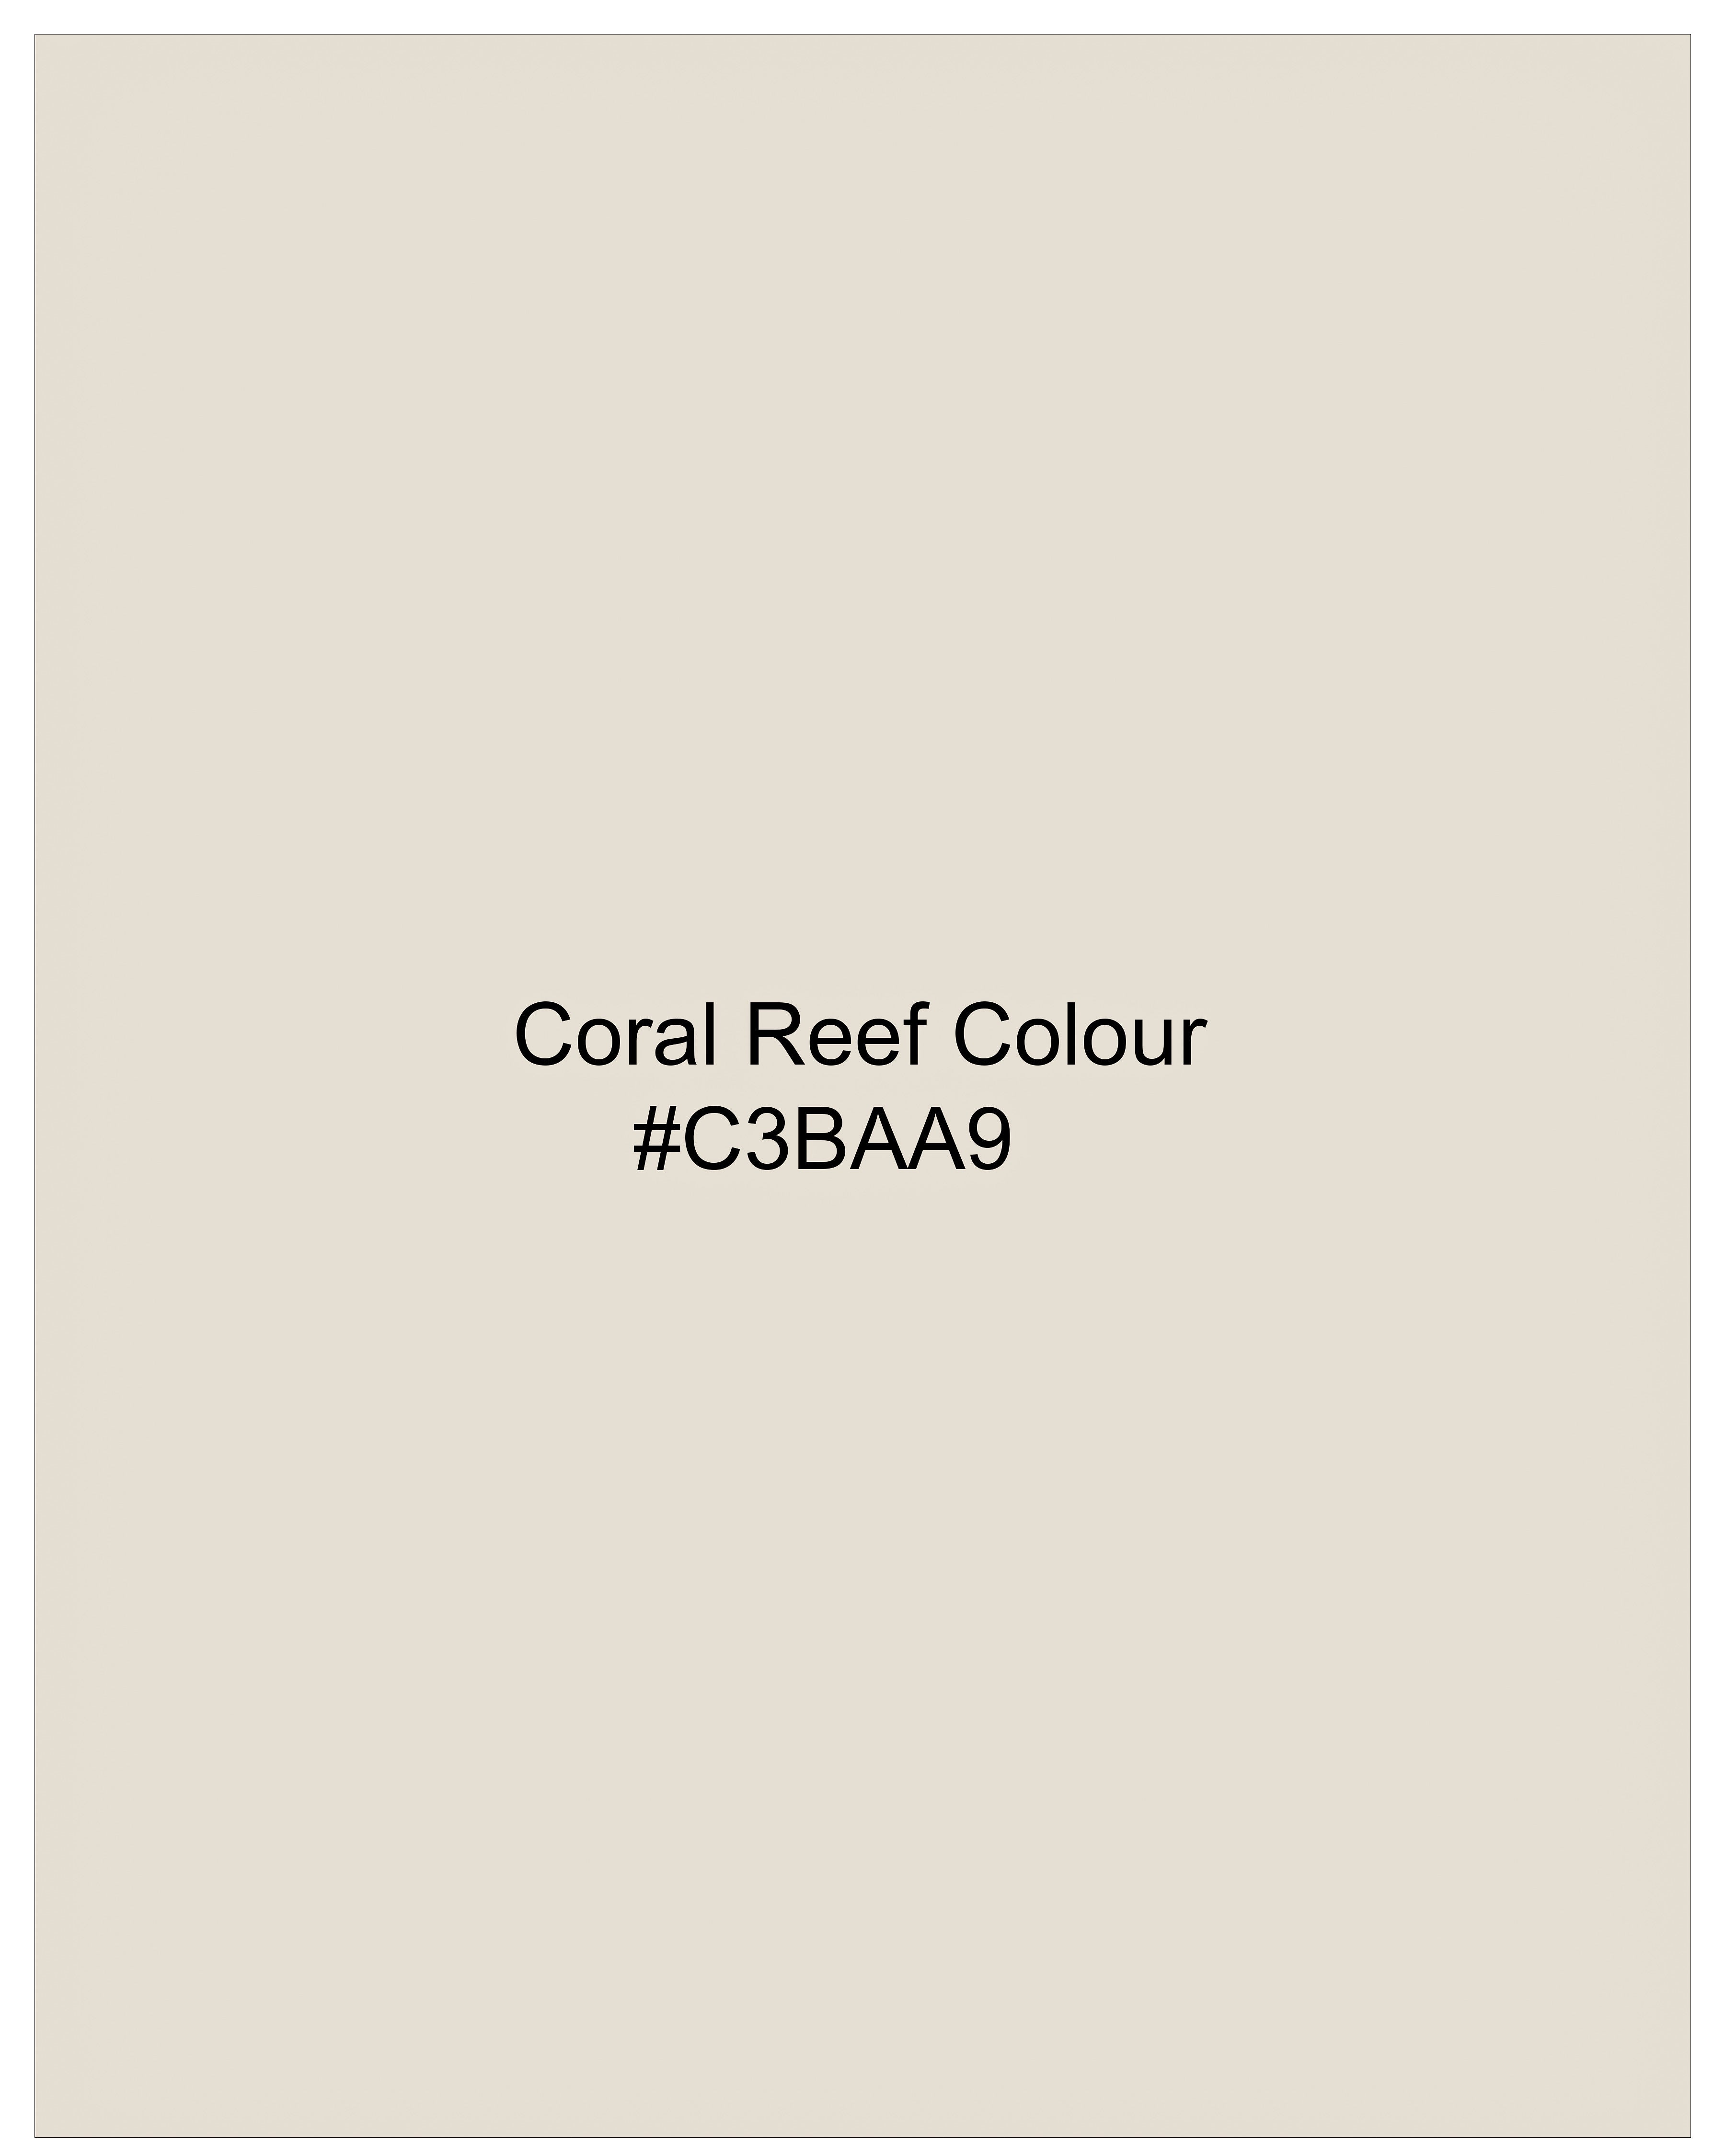 Coral Reef Cream Cross Buttoned Bandhgala Luxurious Linen Blazer BL2305-CBG-36, BL2305-CBG-38, BL2305-CBG-40, BL2305-CBG-42, BL2305-CBG-44, BL2305-CBG-46, BL2305-CBG-48, BL2305-CBG-50, BL2305-CBG-52, BL2305-CBG-54, BL2305-CBG-56, BL2305-CBG-58, BL2305-CBG-60